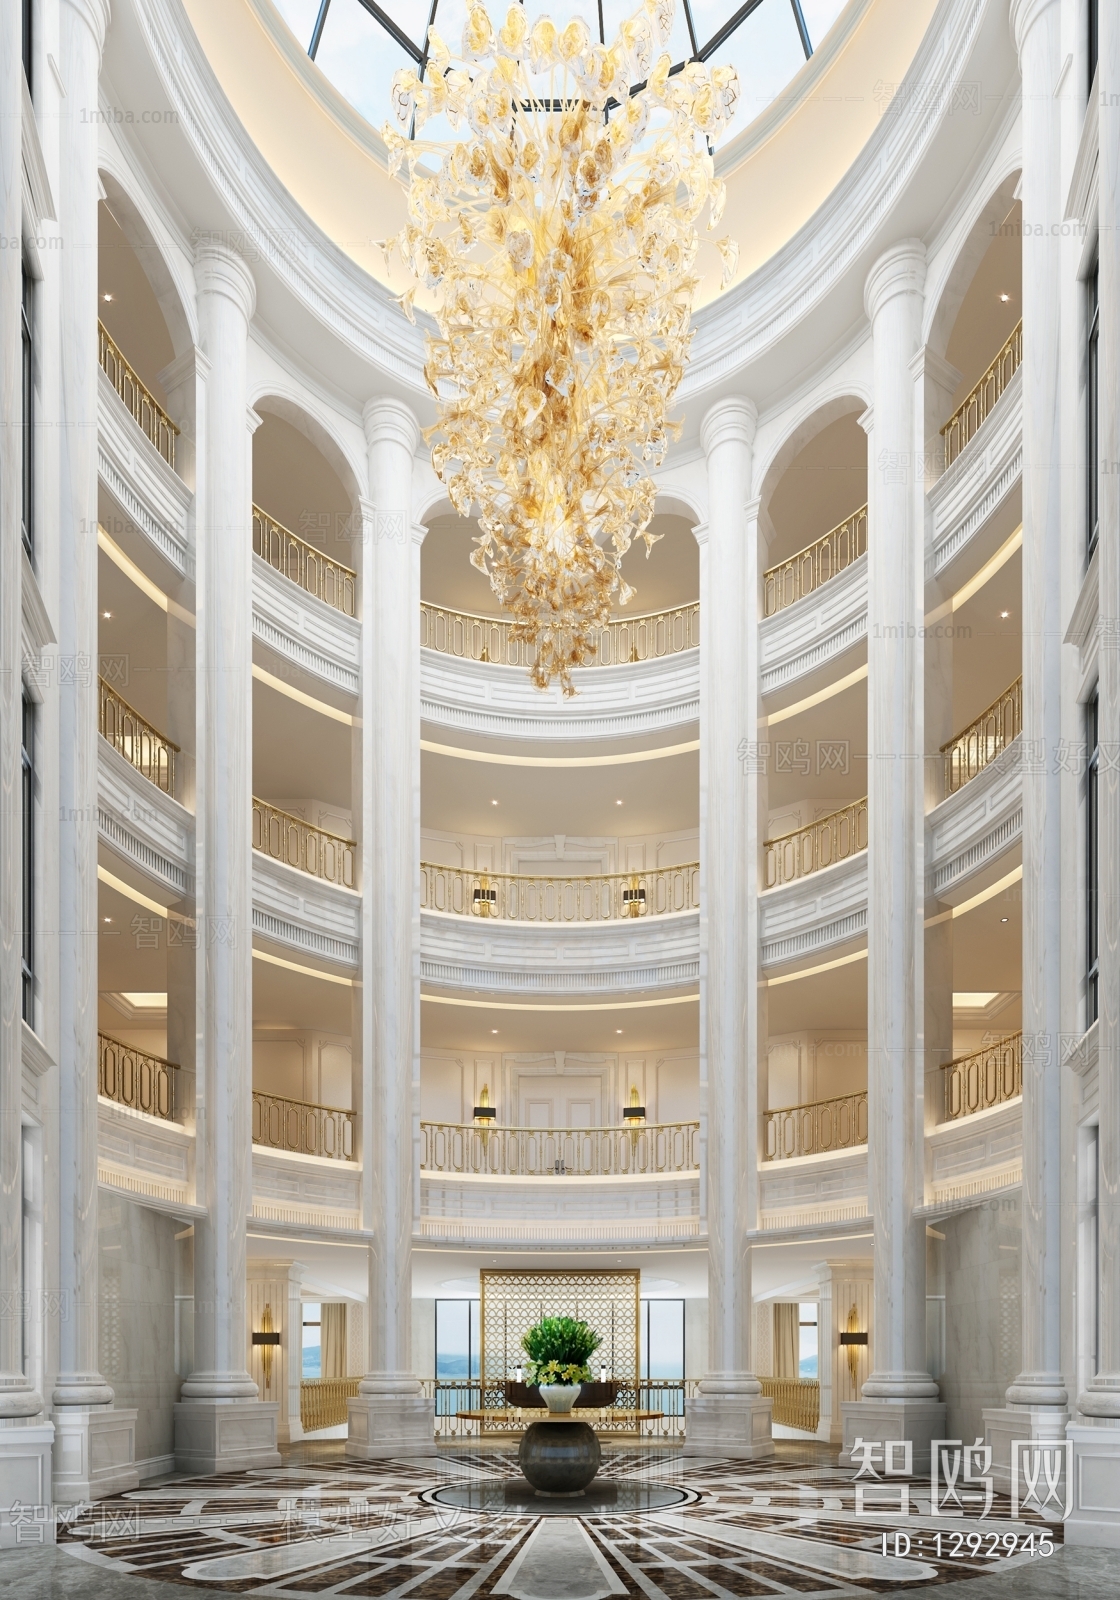 European Style Lobby Hall